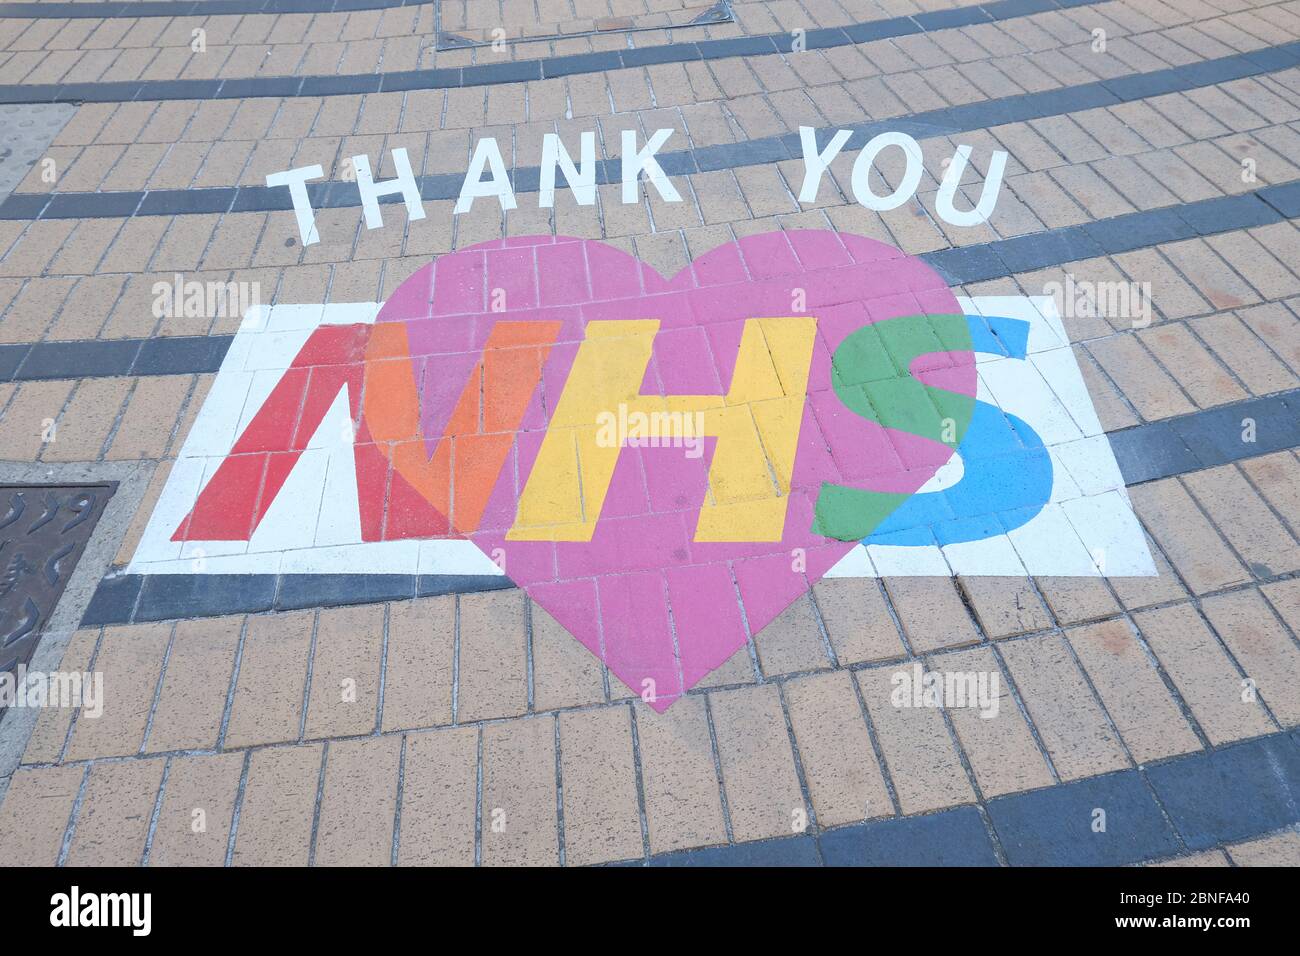 Mensaje de agradecimiento de NHS puesto por la autoridad local Merton Council para agradecer a los trabajadores del hospital durante la pandemia de coronavirus en 2020. Foto de stock